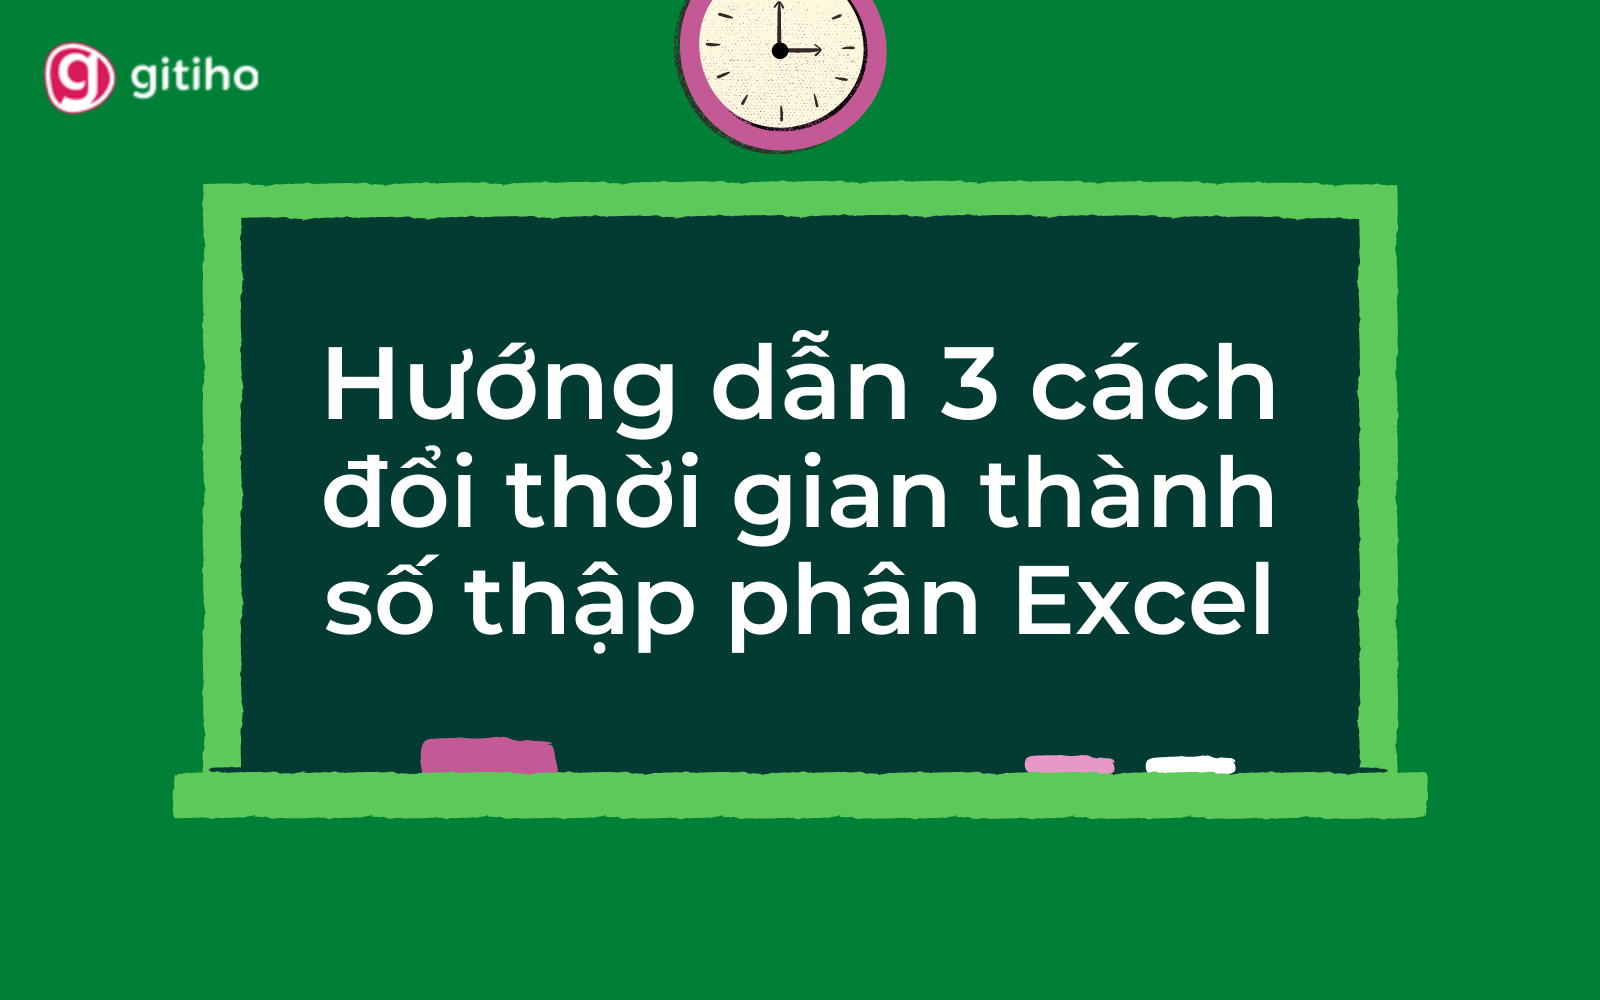 Hướng dẫn 3 cách chuyển đổi giờ ra số trong Excel đơn giản nhất